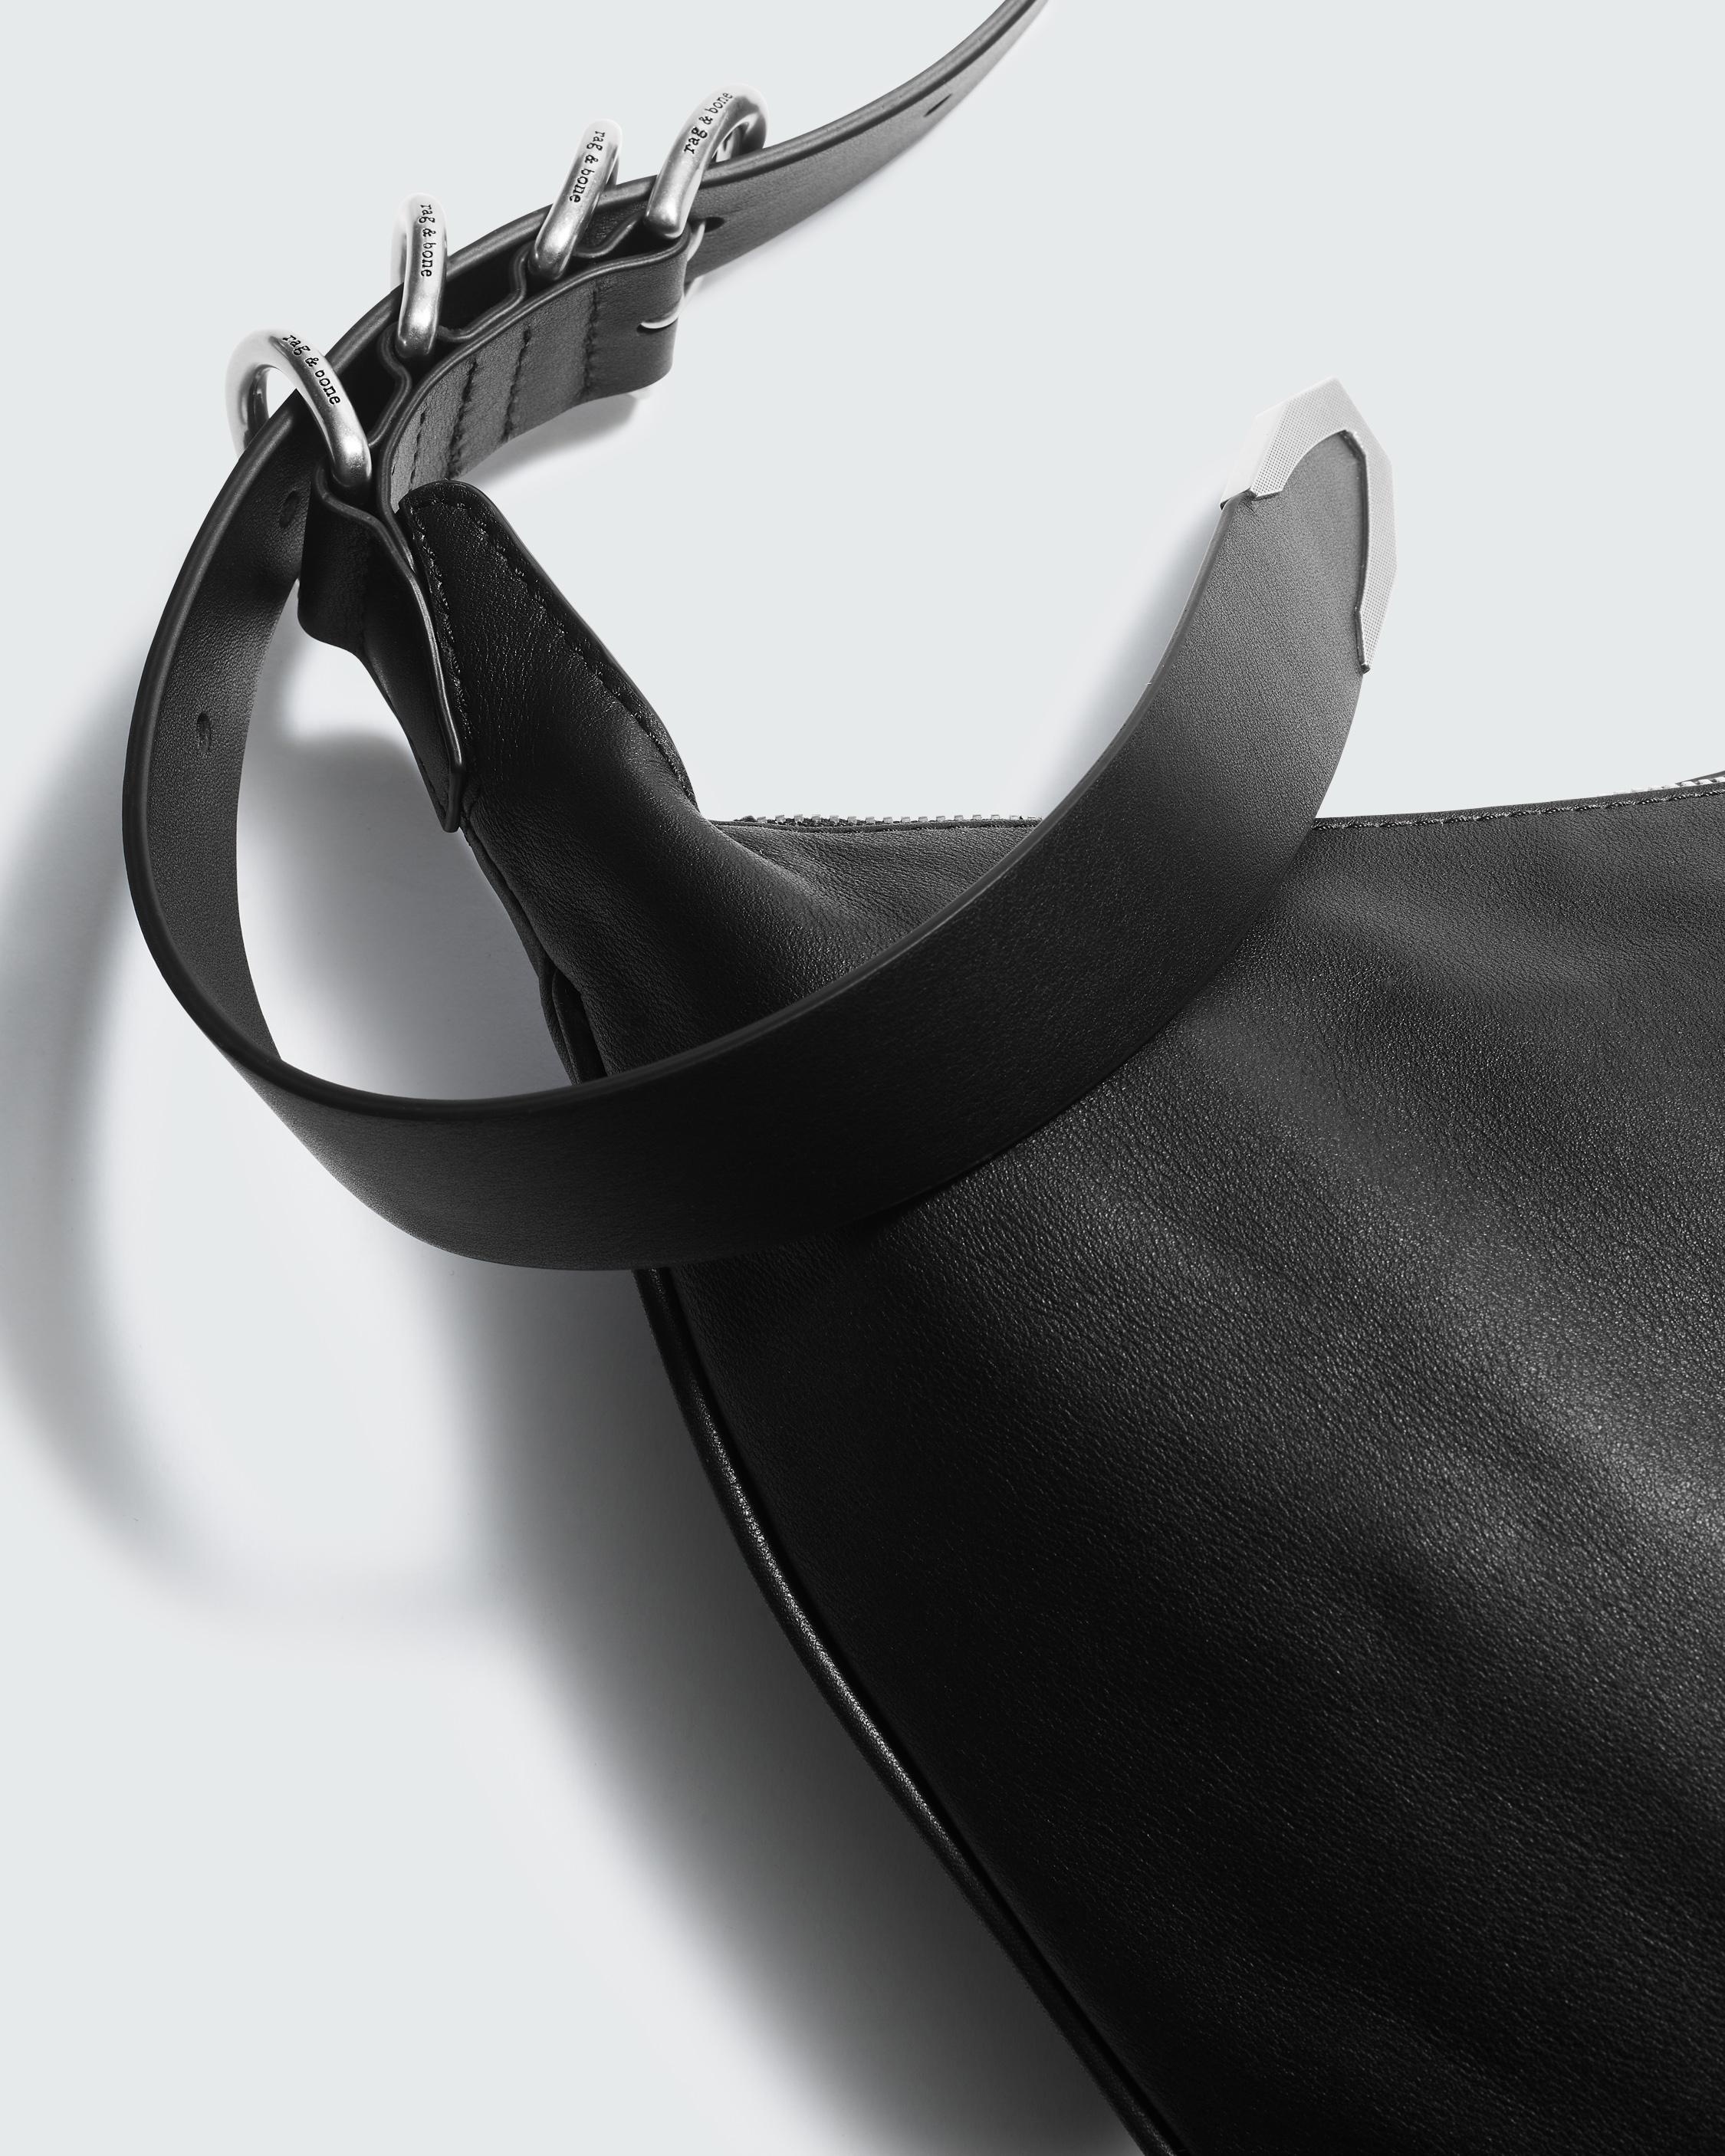 Spire Shoulder Bag - Leather
Medium Shoulder Bag - 7